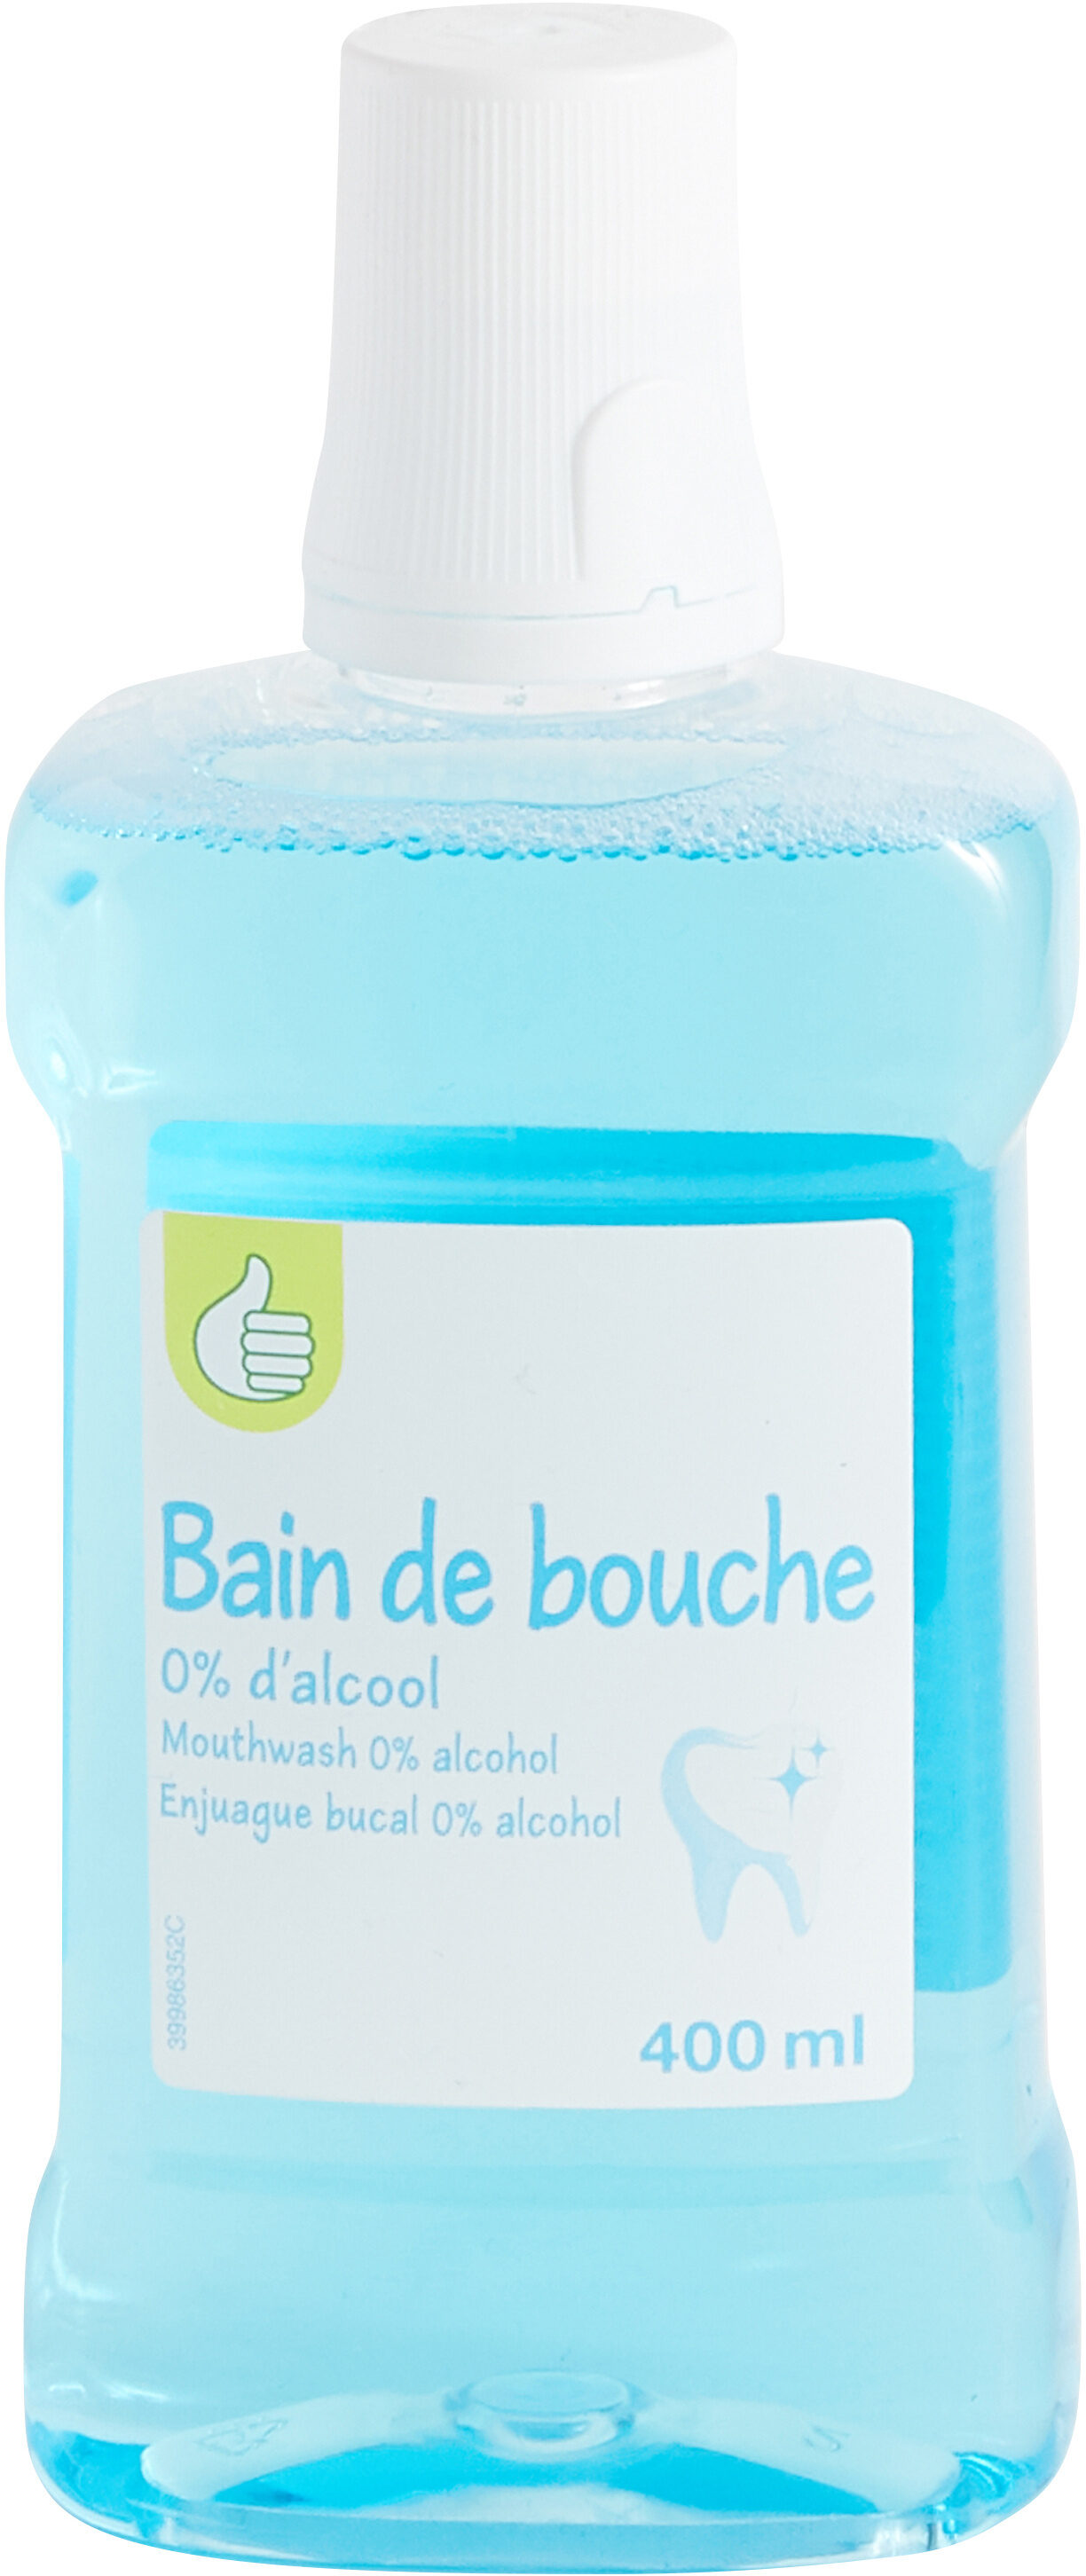 Pouce- bain de bouche - 400 ml e - Inhaltsstoffe - fr